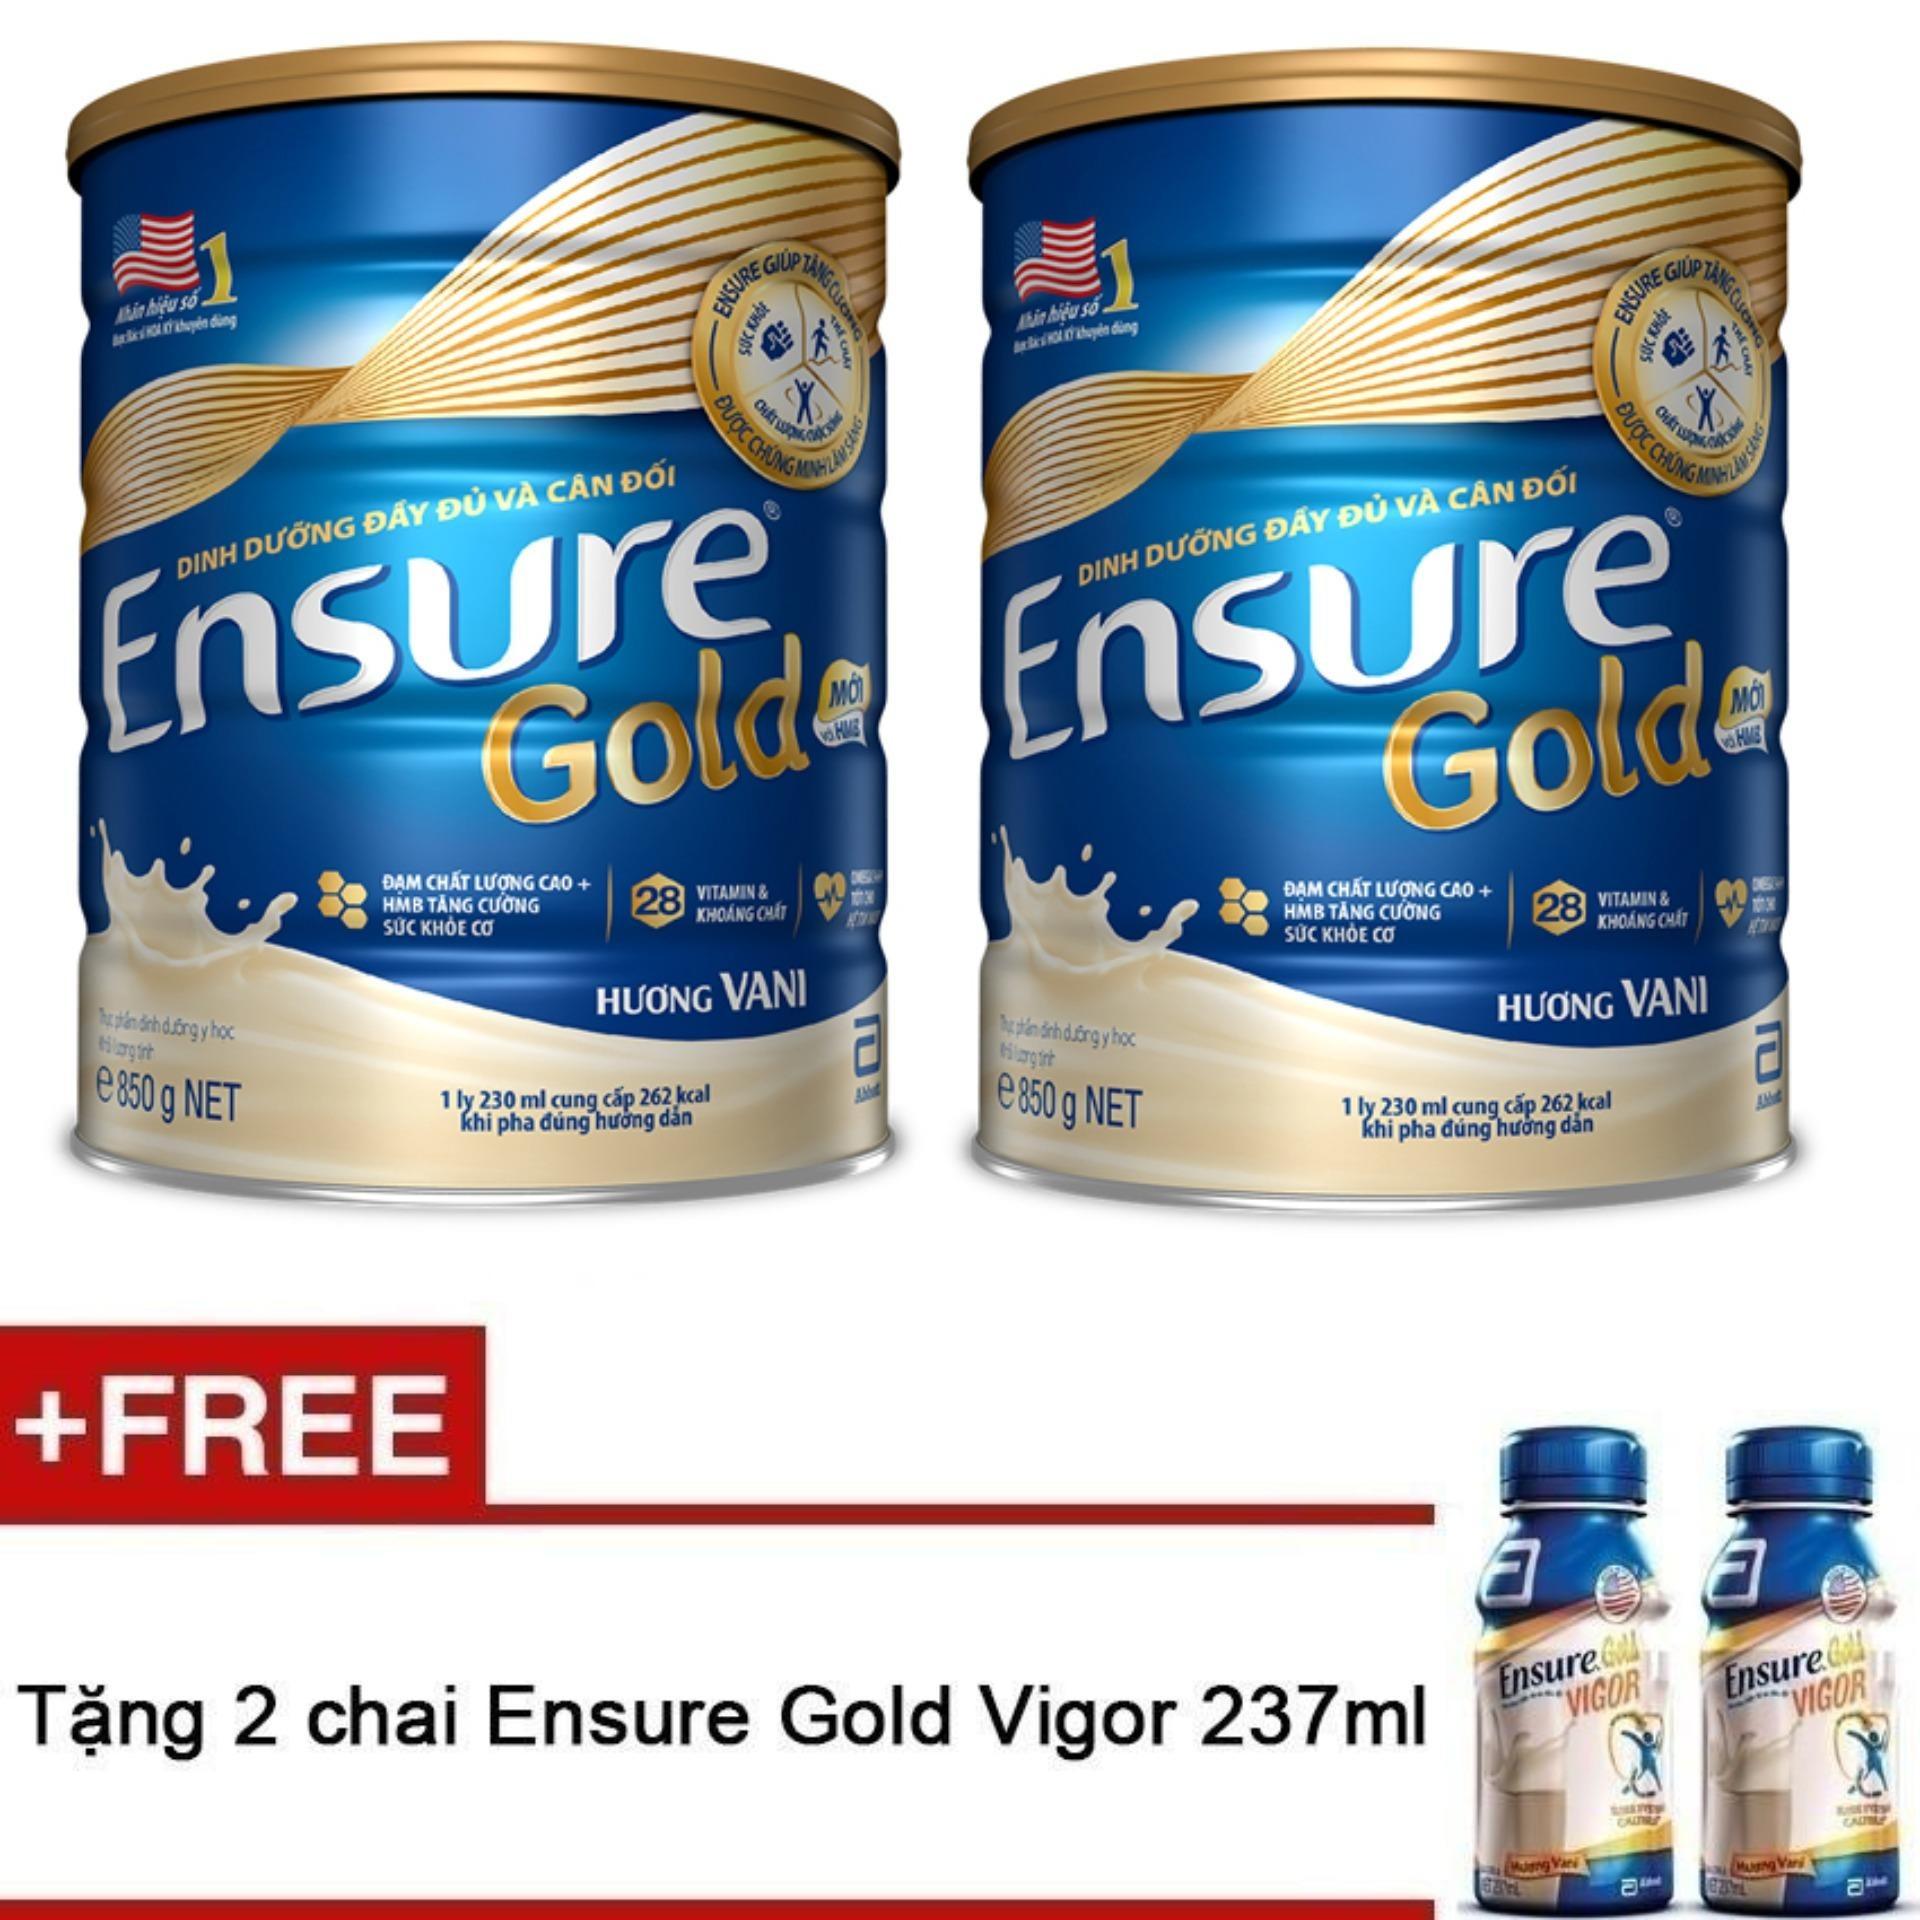 Bộ 2 lon sữa bột Ensure Gold Hương Vani 850g tặng 2 Ensure Vigor Gold 237ml